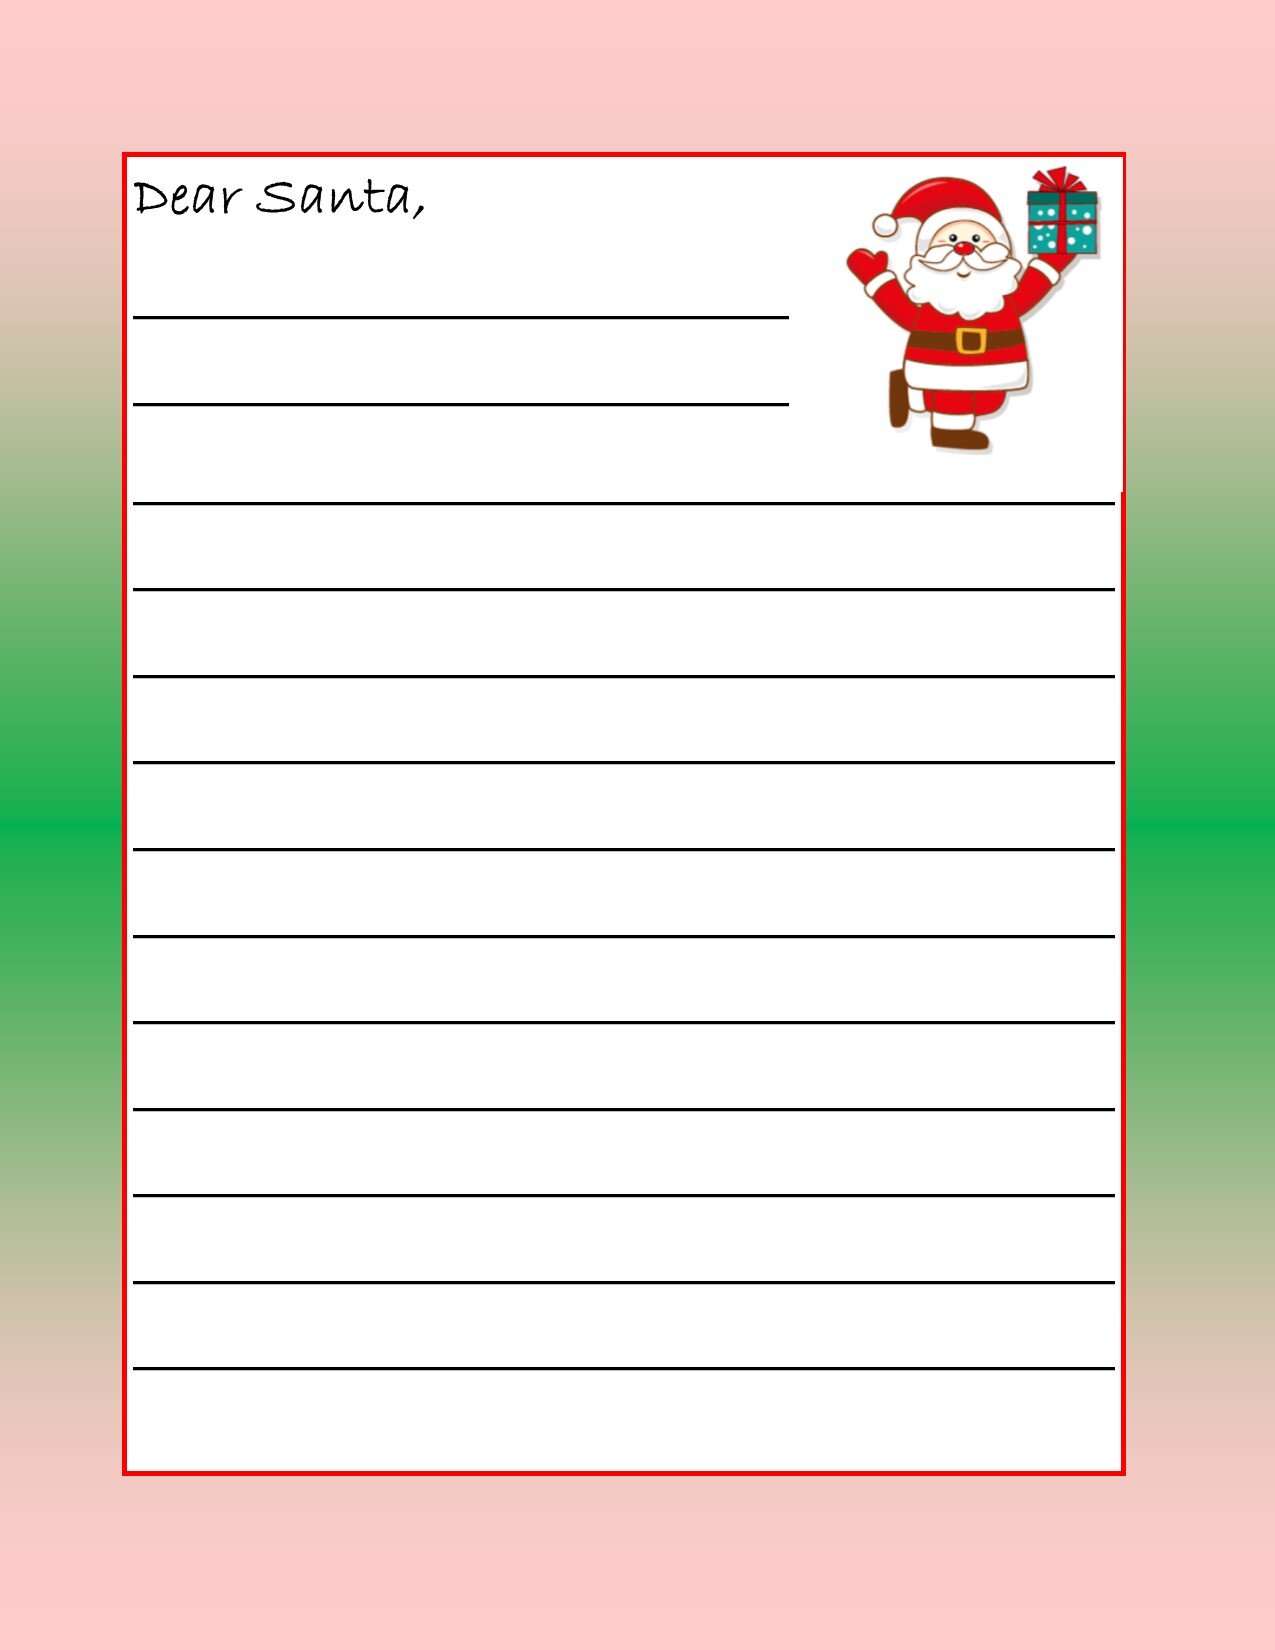 Letters to Santa 4.jpg